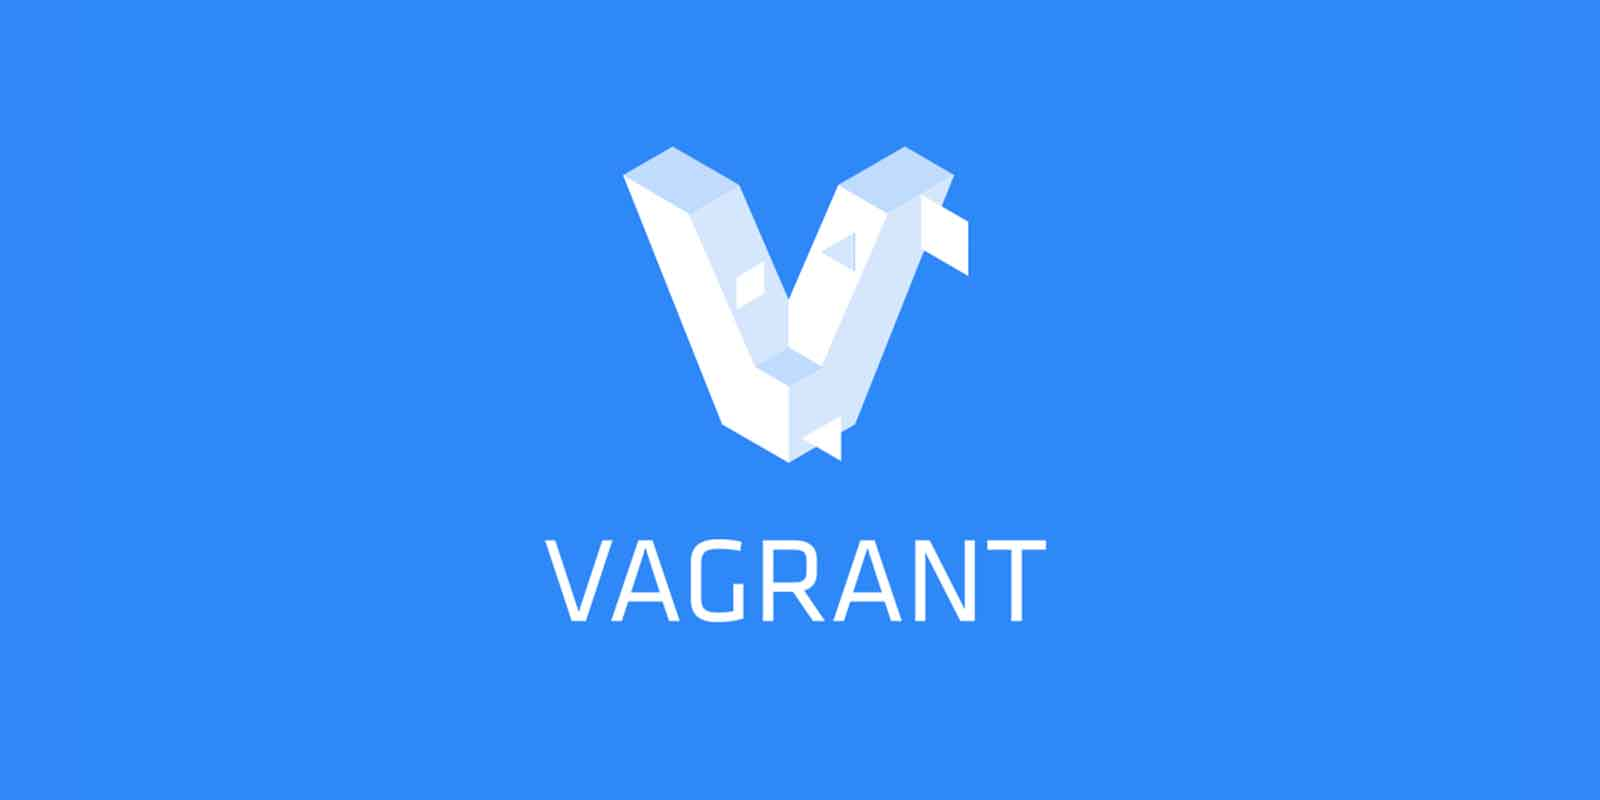 Vagrant là gì? Hướng dẫn sử dụng Vagrant